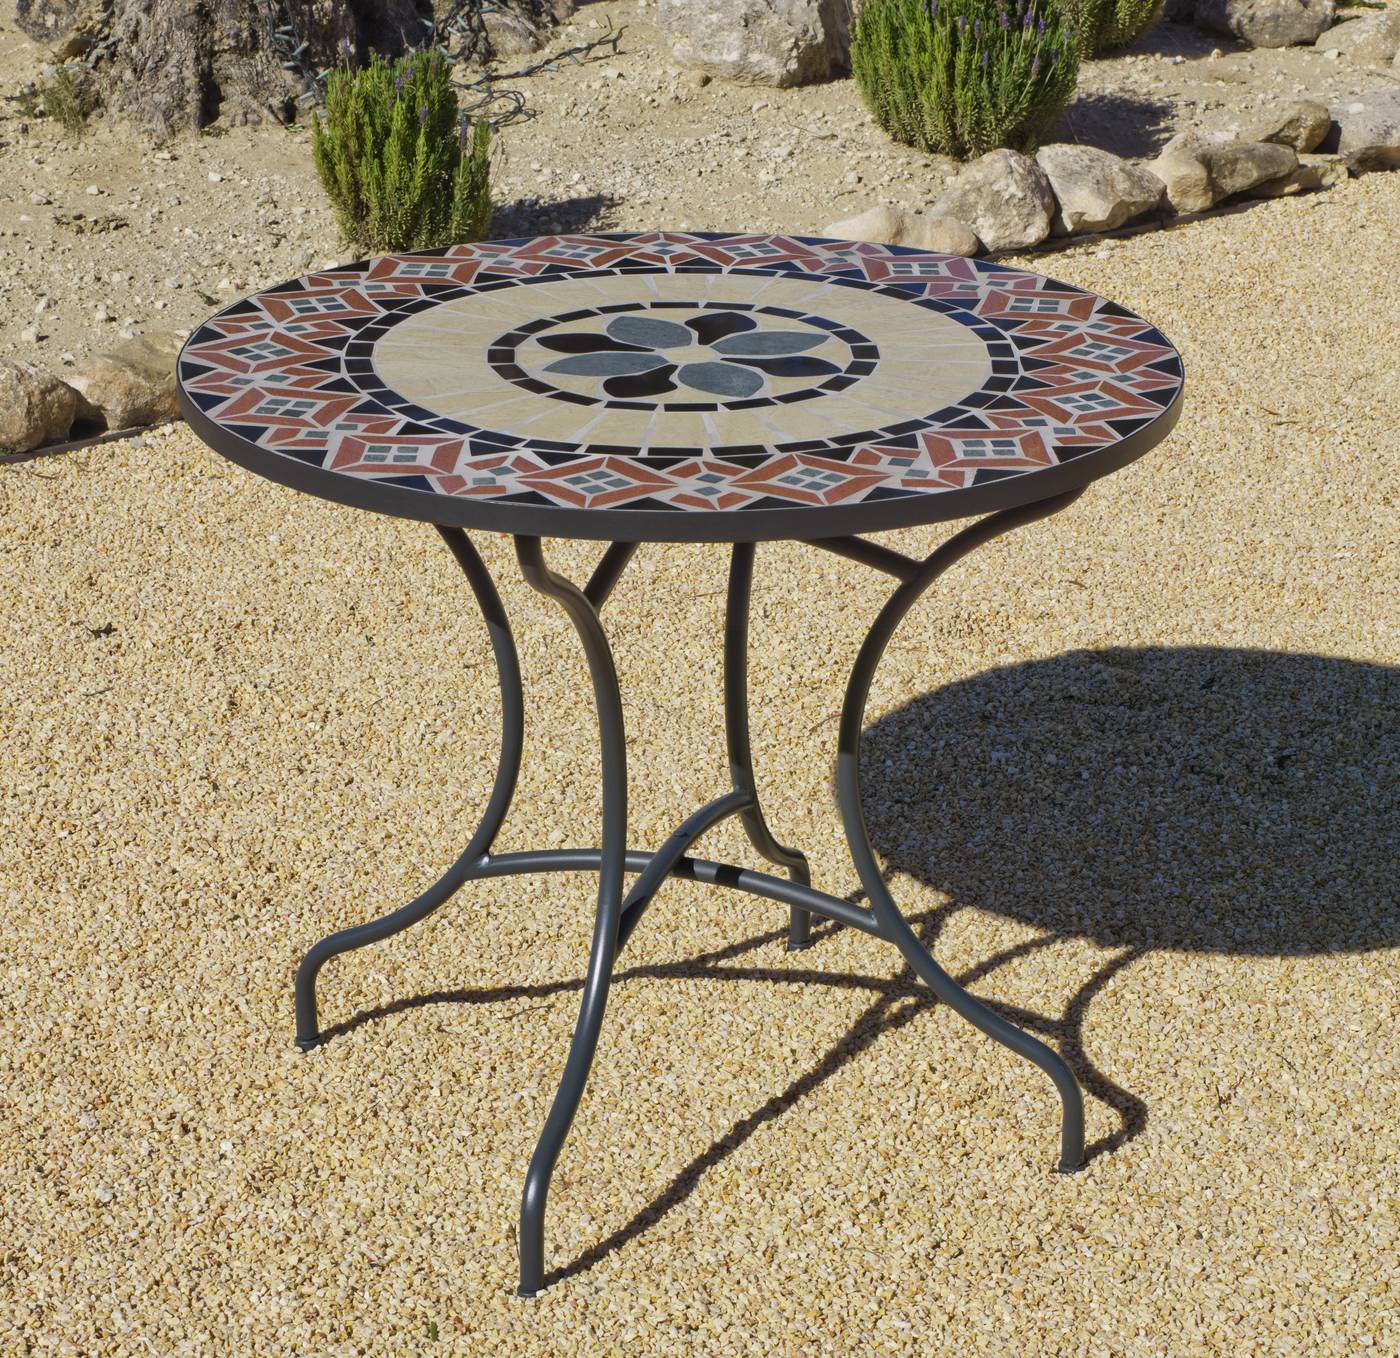 Mesa de forja color gris antracita, con tablero mosaico circular de 90 cm.